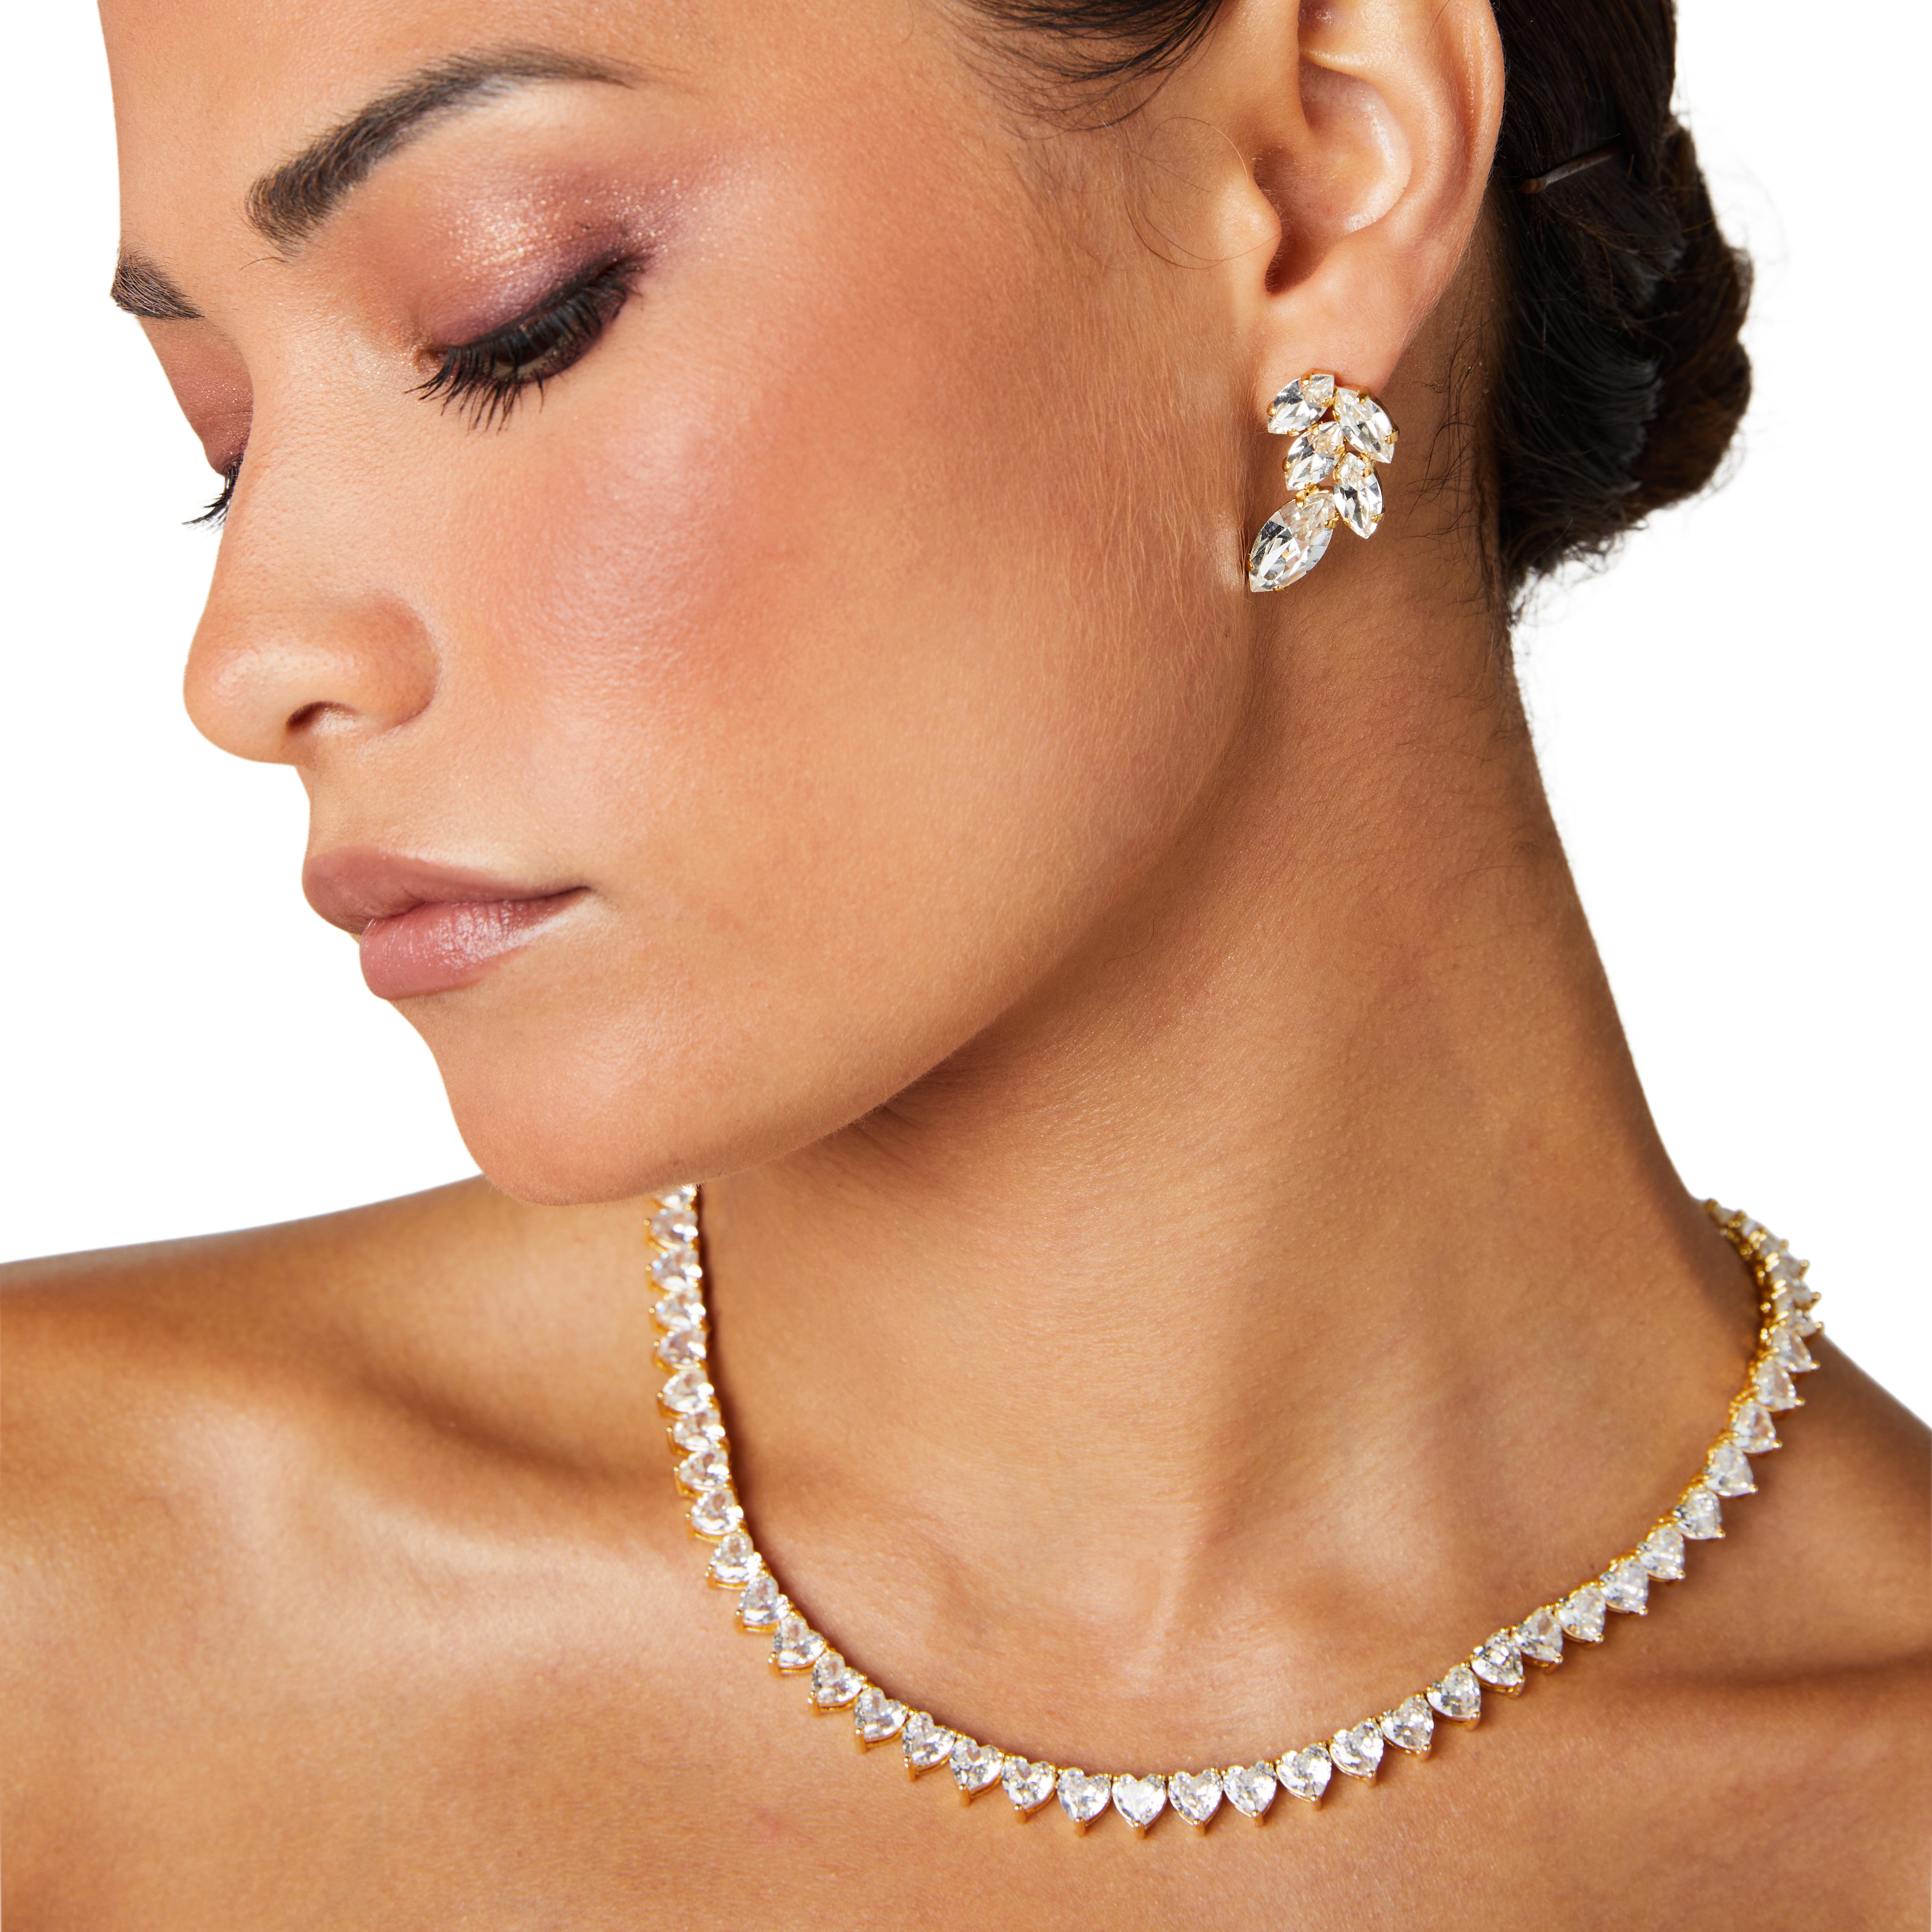 Cluster earrings, swarovski earrings, crystal earrings, designer earrings, gold earrings, statement earrings